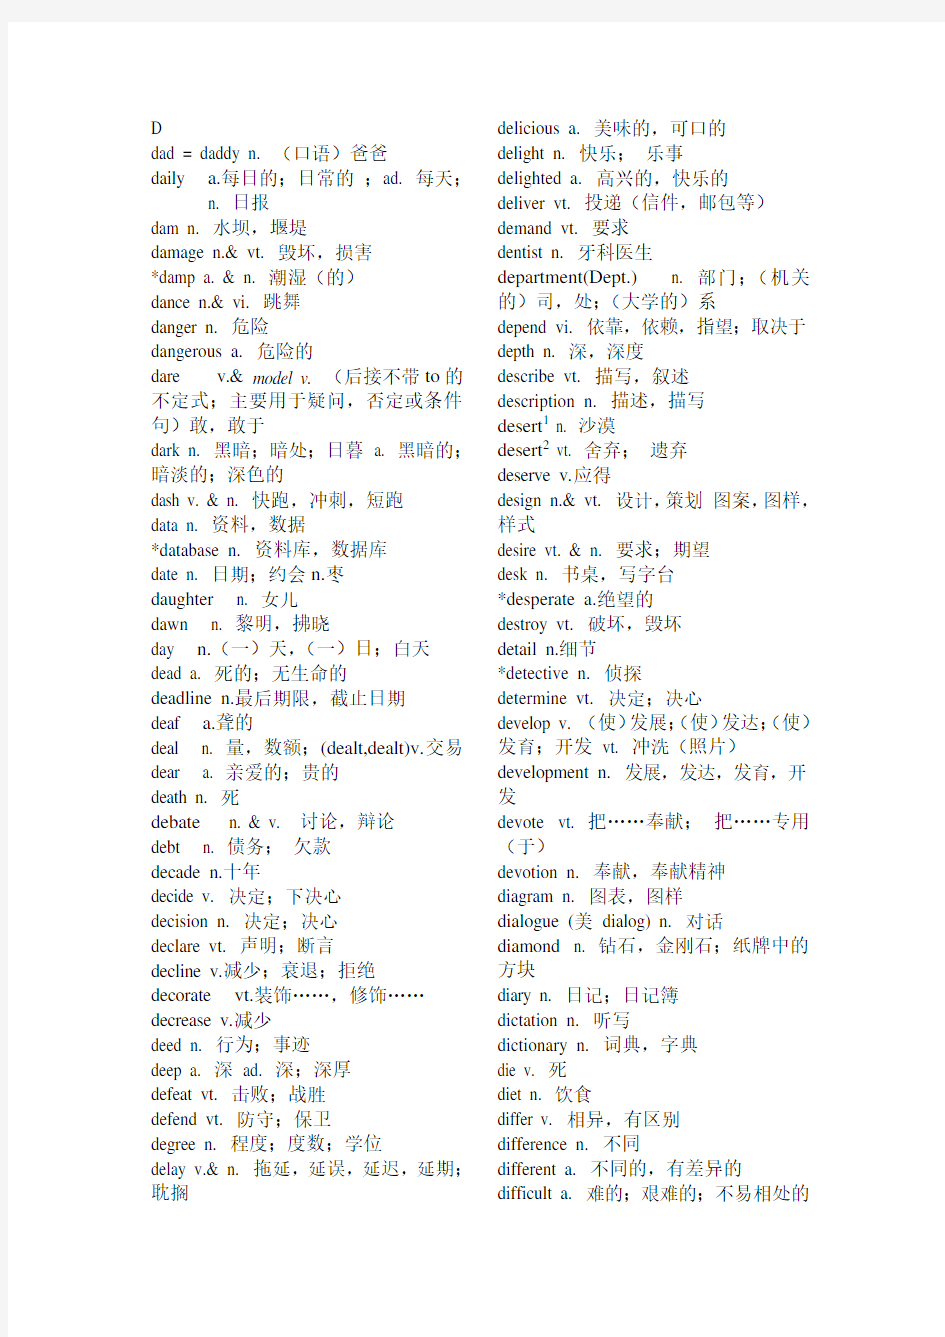 2011年高考英语词汇表(字母D开头)